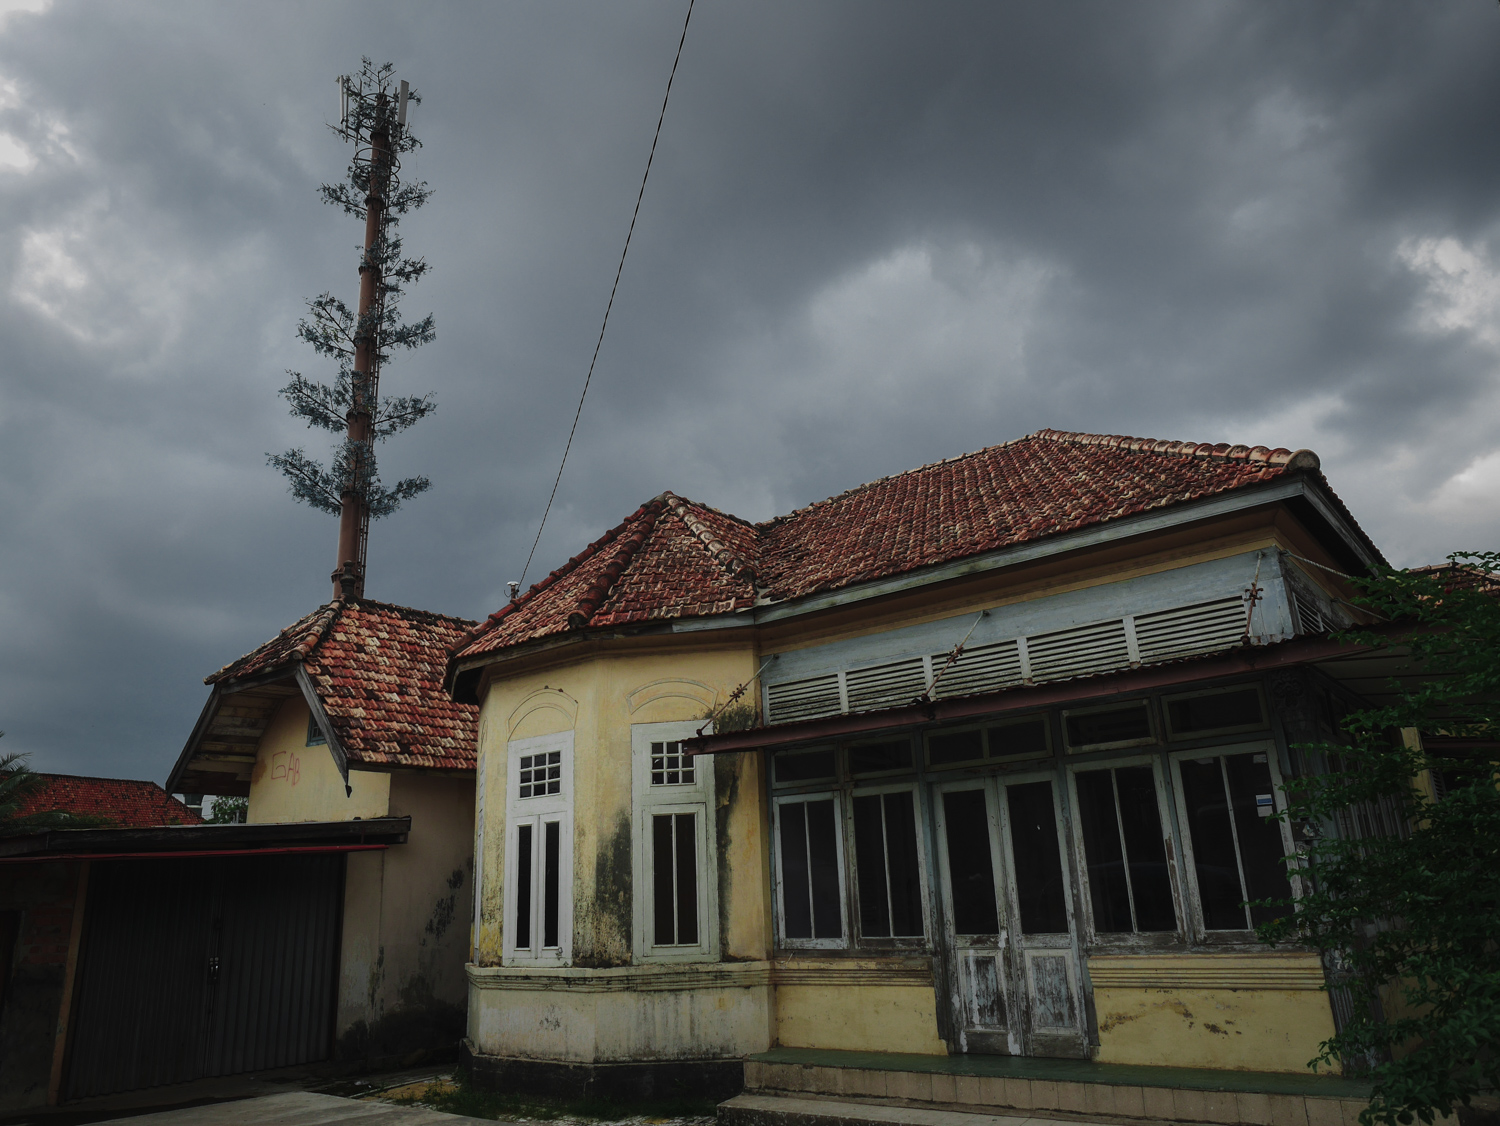 Tower Unik di Kampung Almunawar Palembang